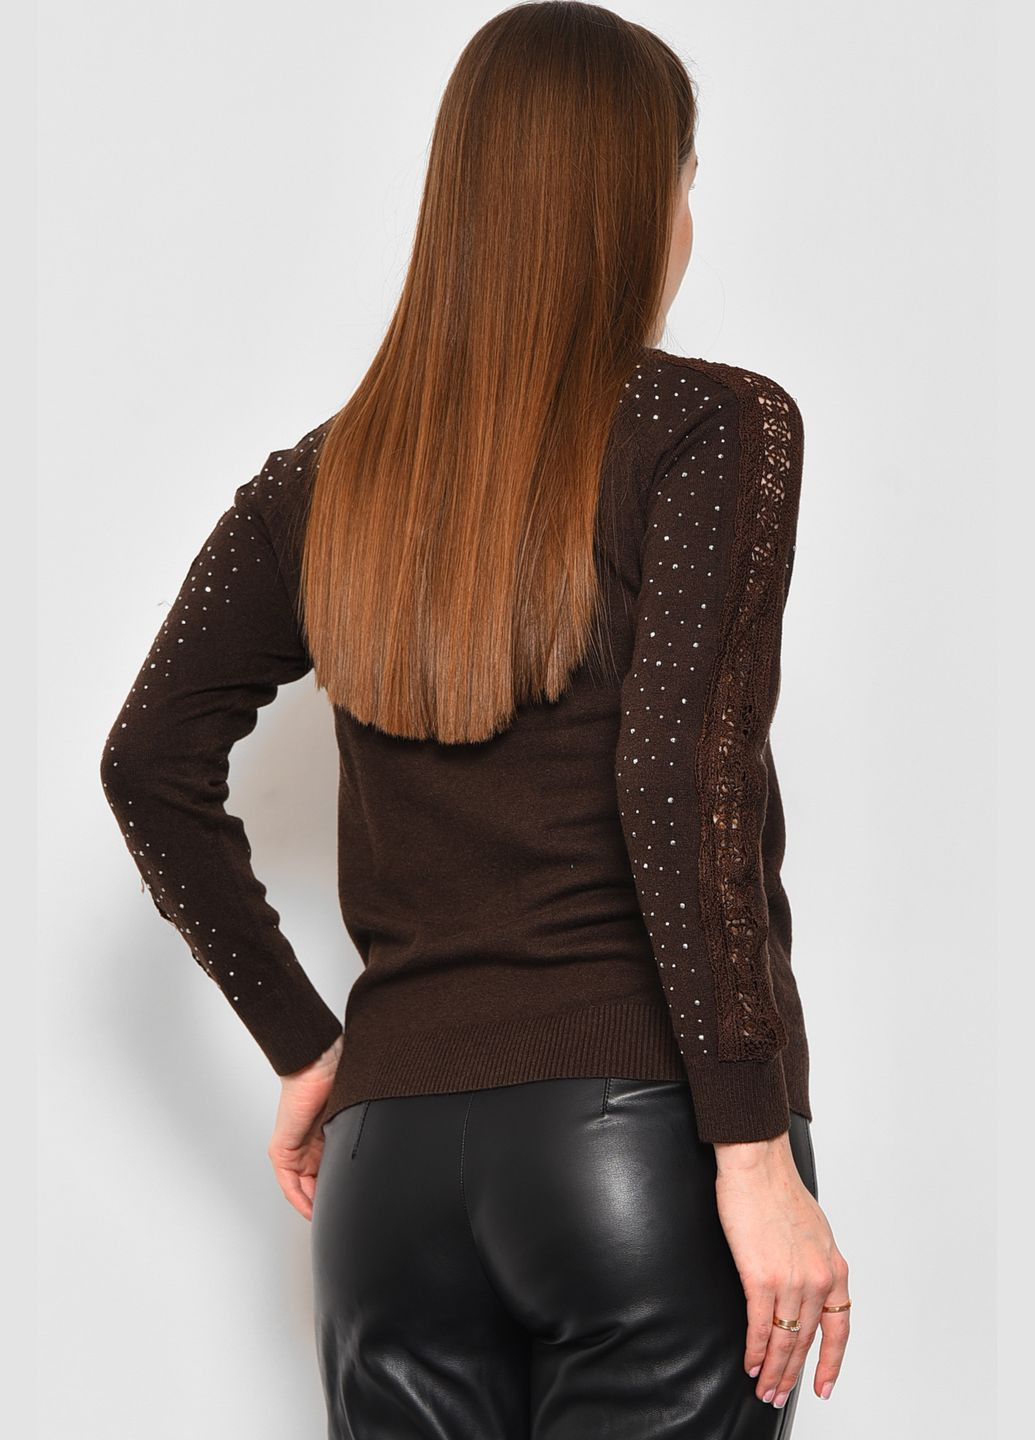 Коричневый зимний свитер женский коричневого цвета пуловер Let's Shop